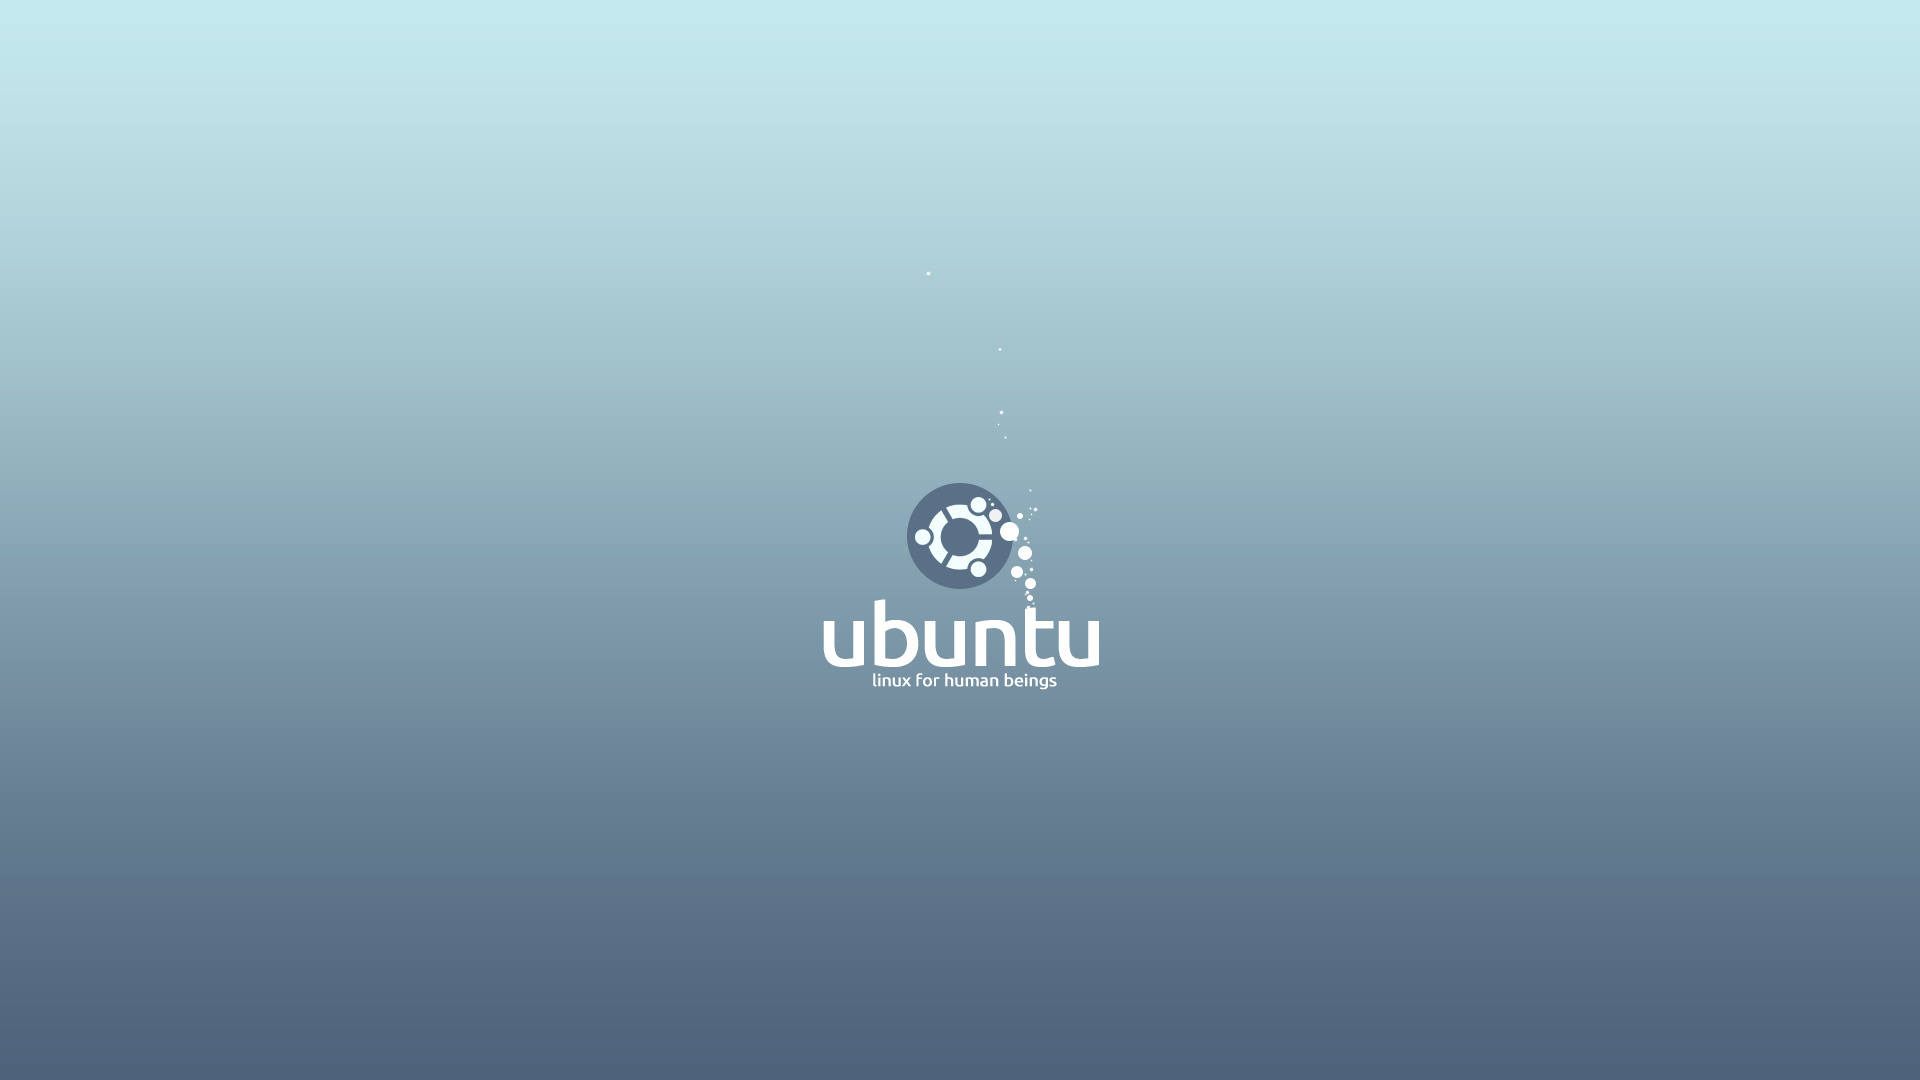 3d обои Ubuntu / Убунту linux for human beings  бренд # 20959